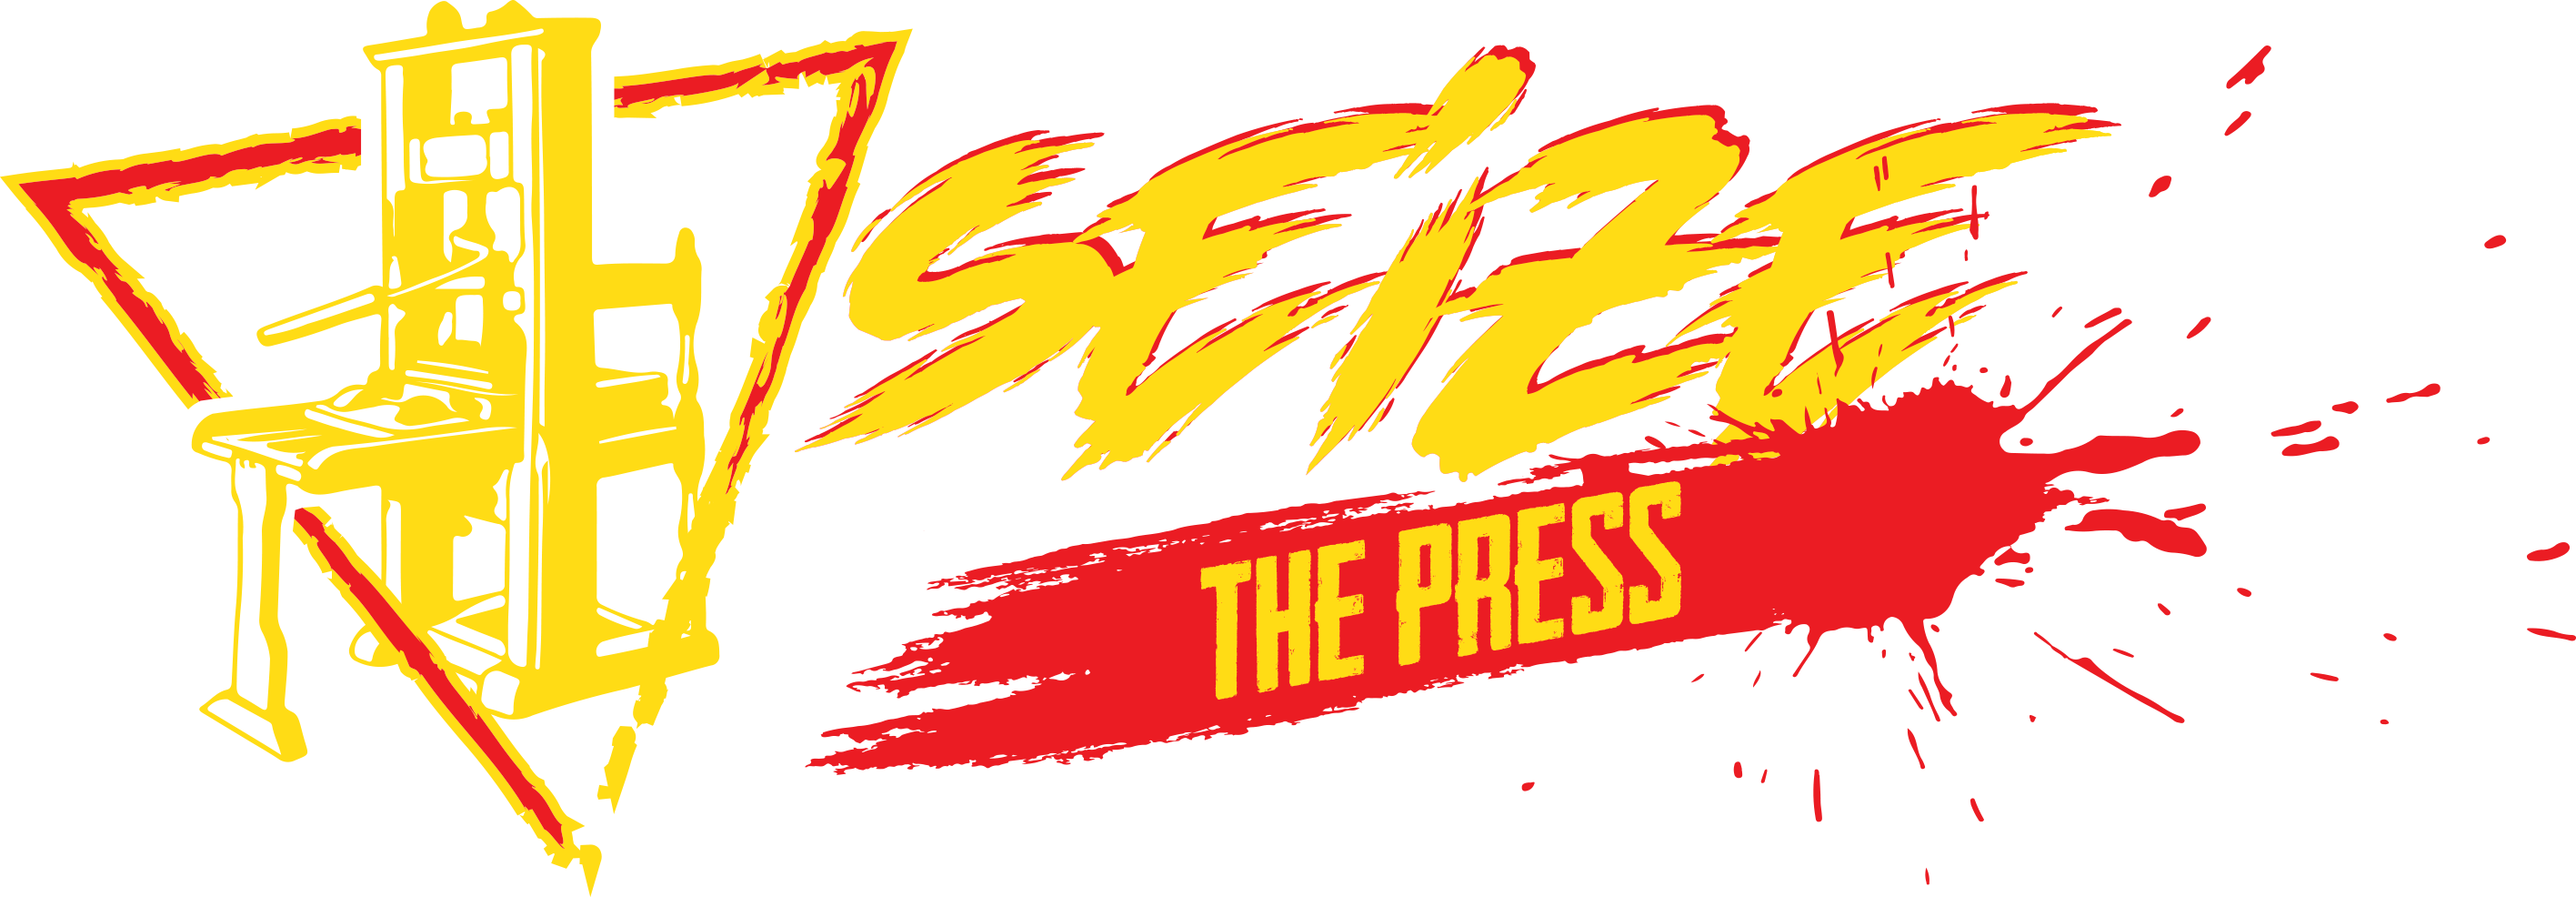 Seize The Press